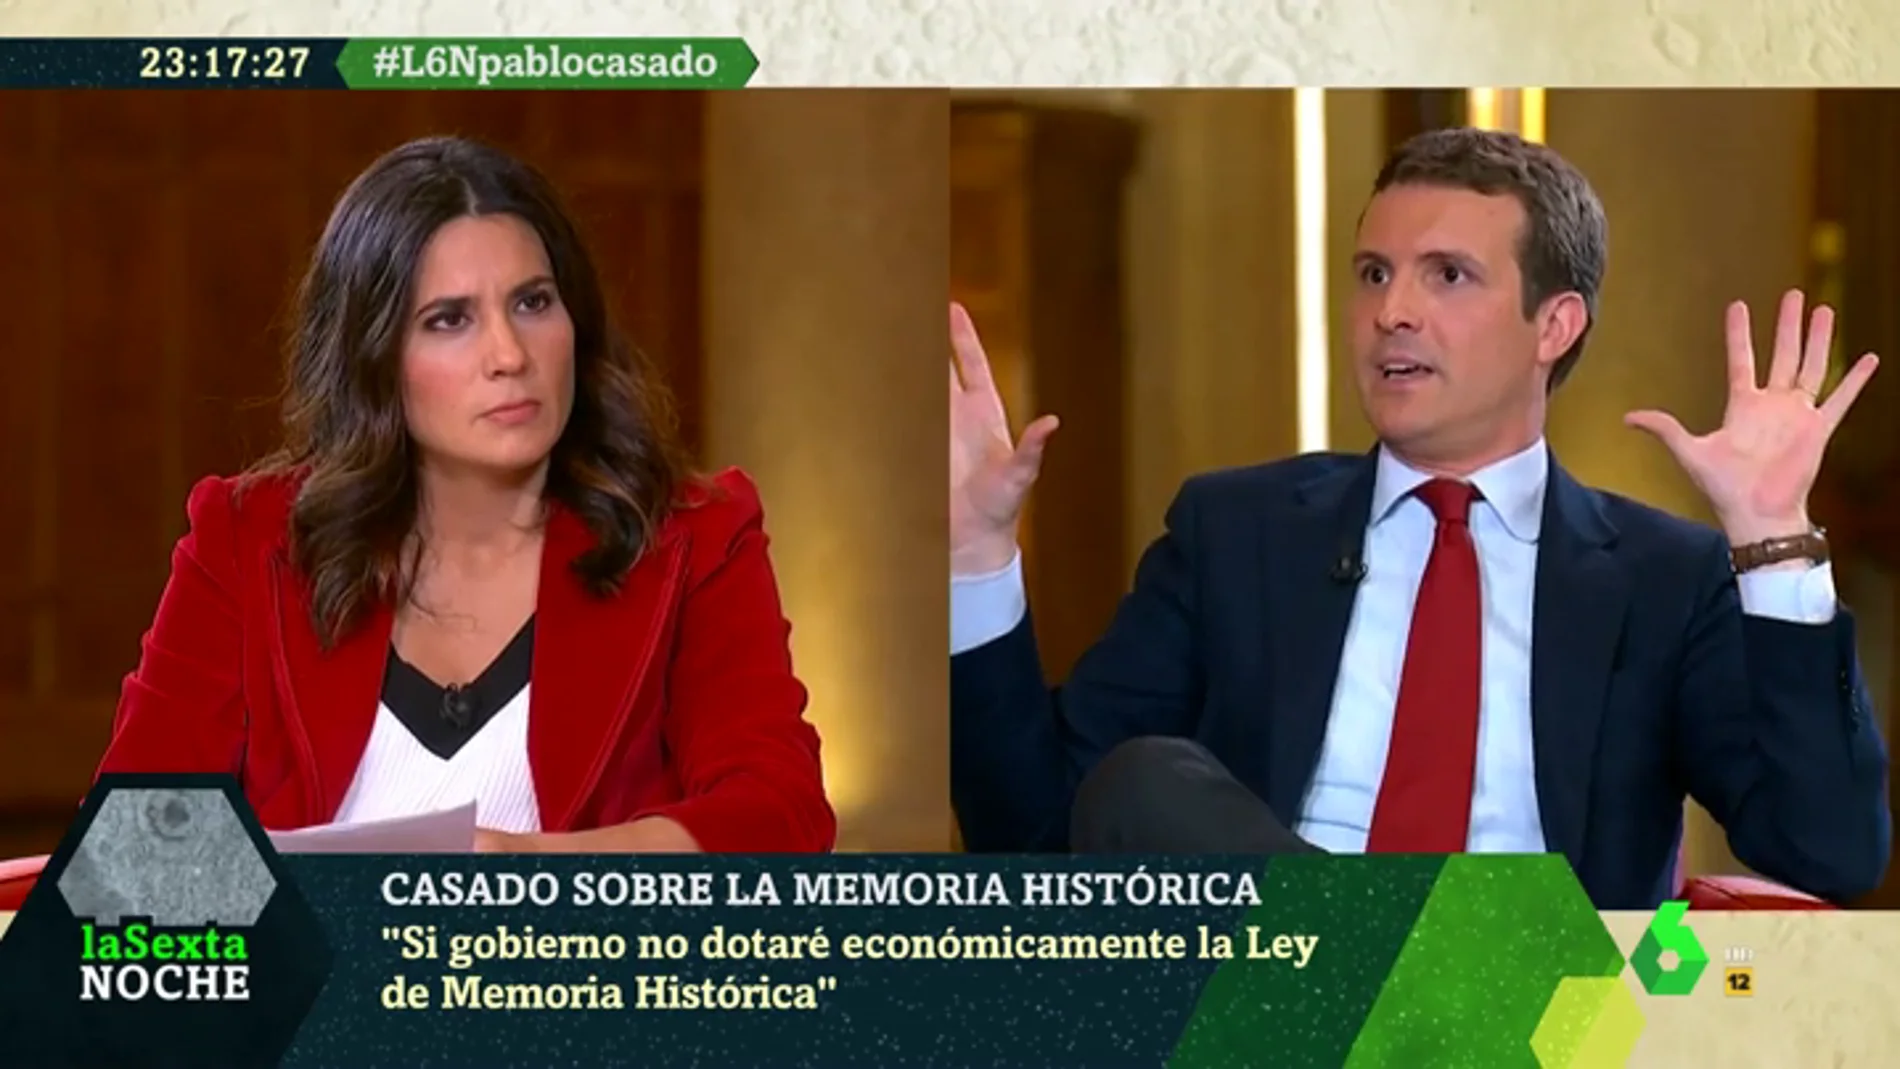 La crítica de María Llapart a Pablo Casado: "Aprovechan crímenes como Laura Luelmo para hacer política"